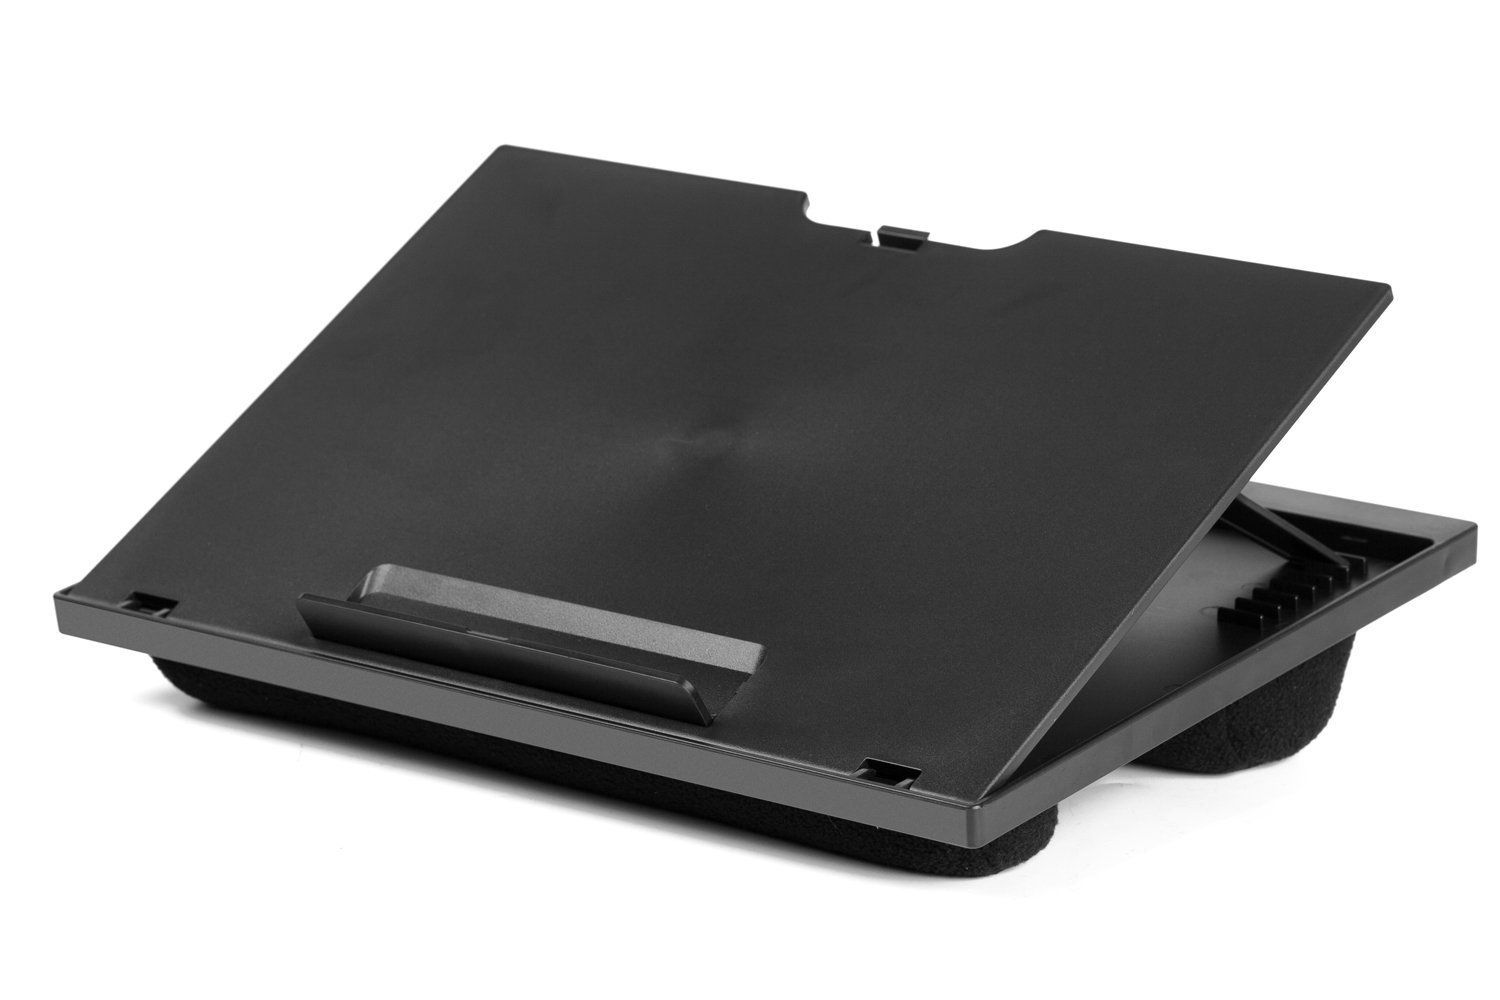 Halter Lap Desk Laptop Stand Review 2020